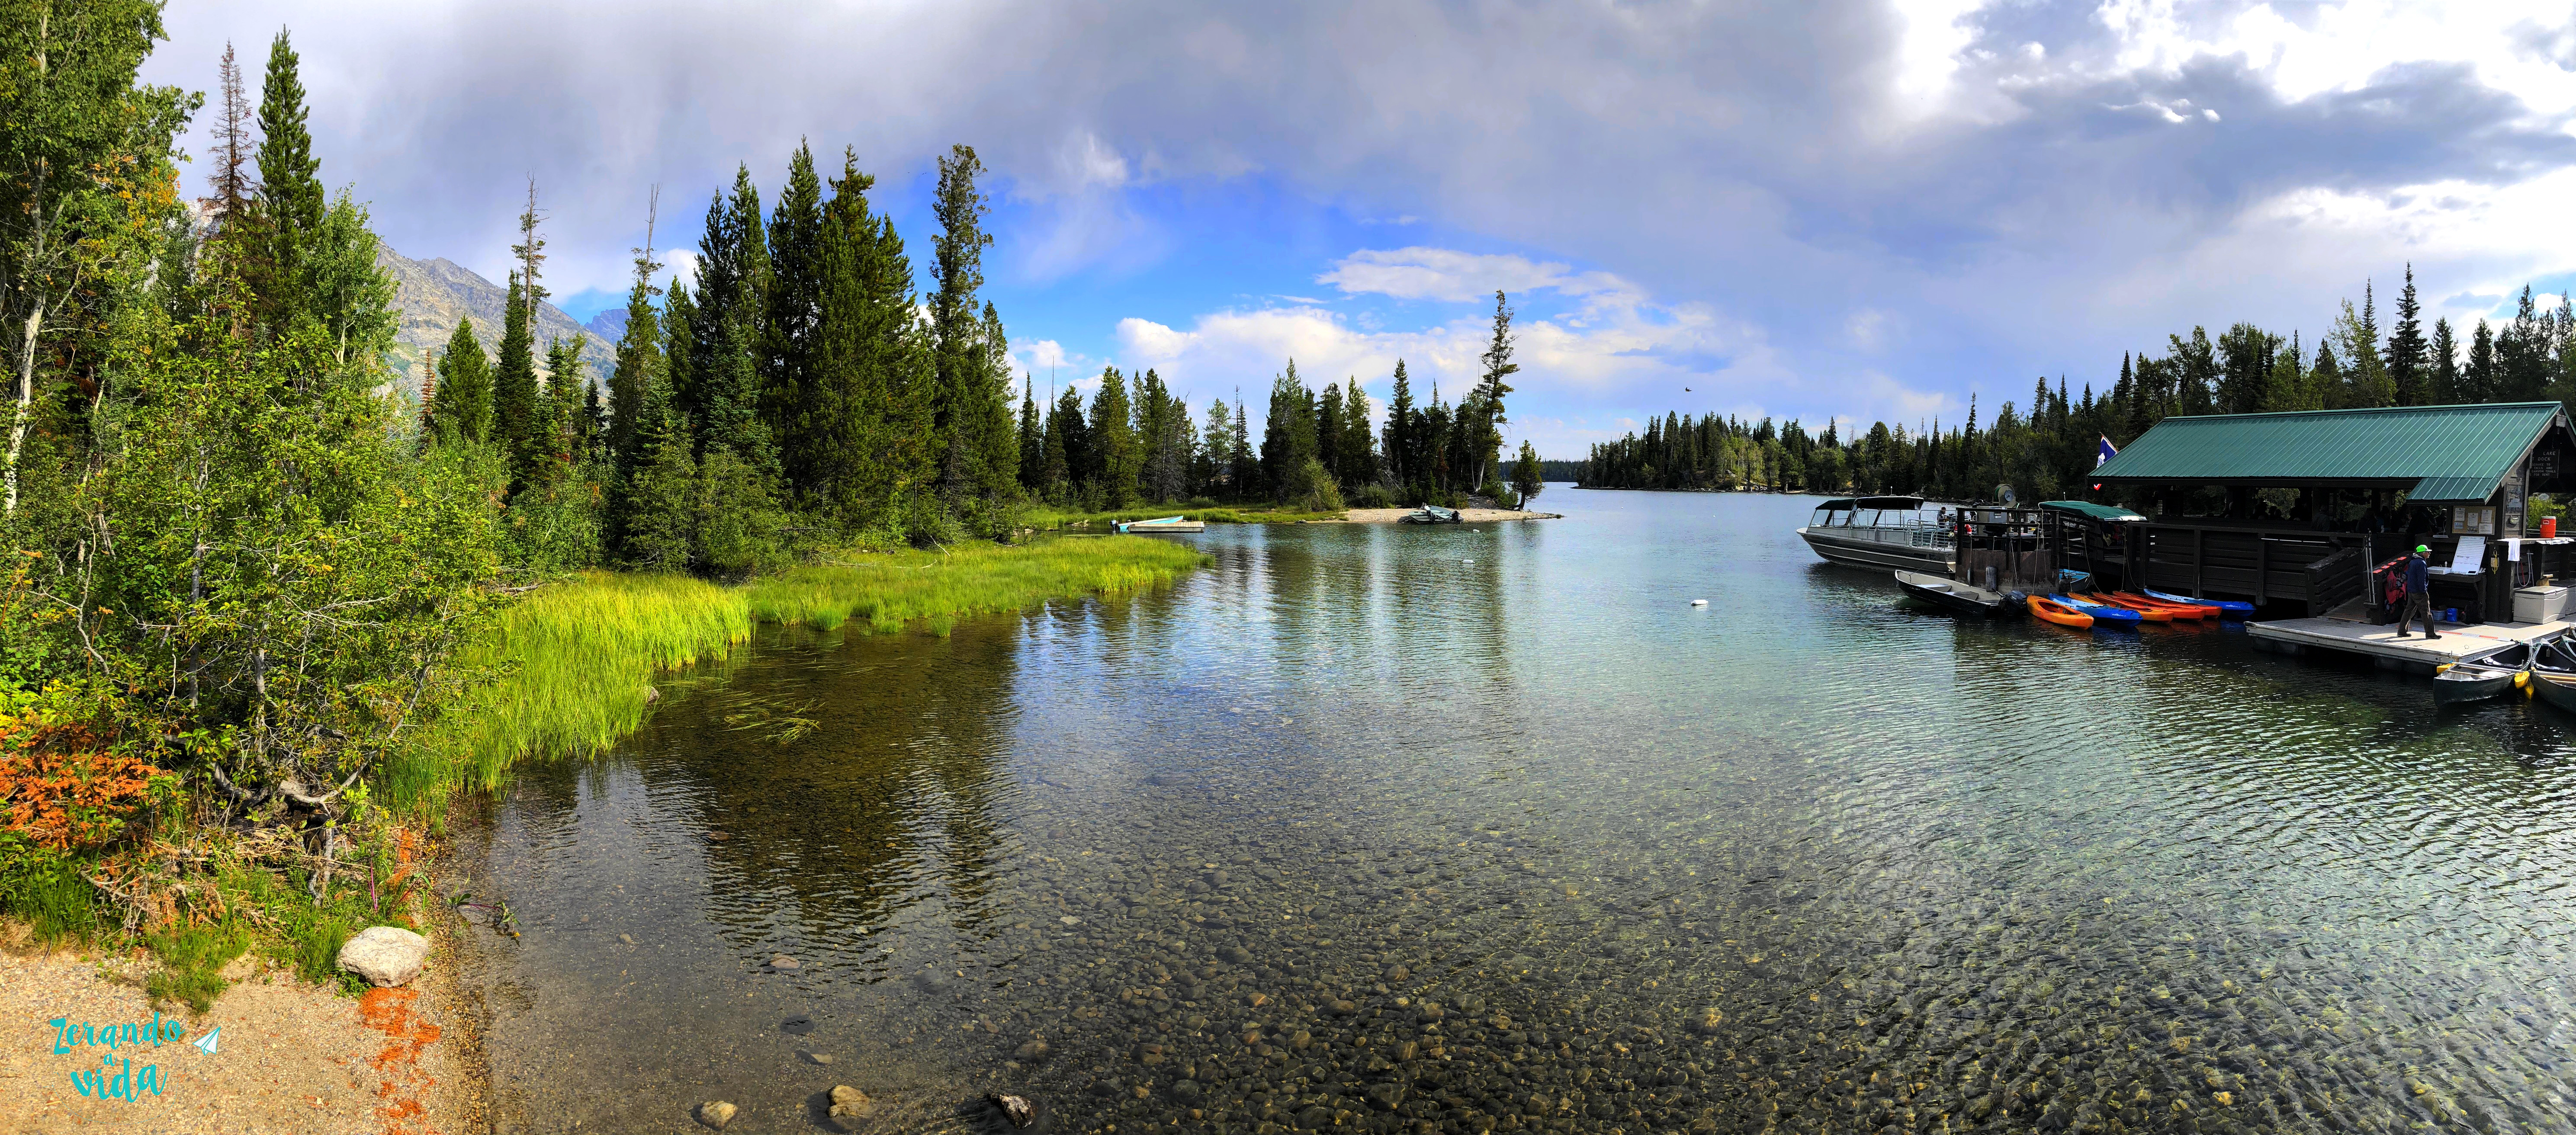 Grand Teton National Park -Jenny Lake